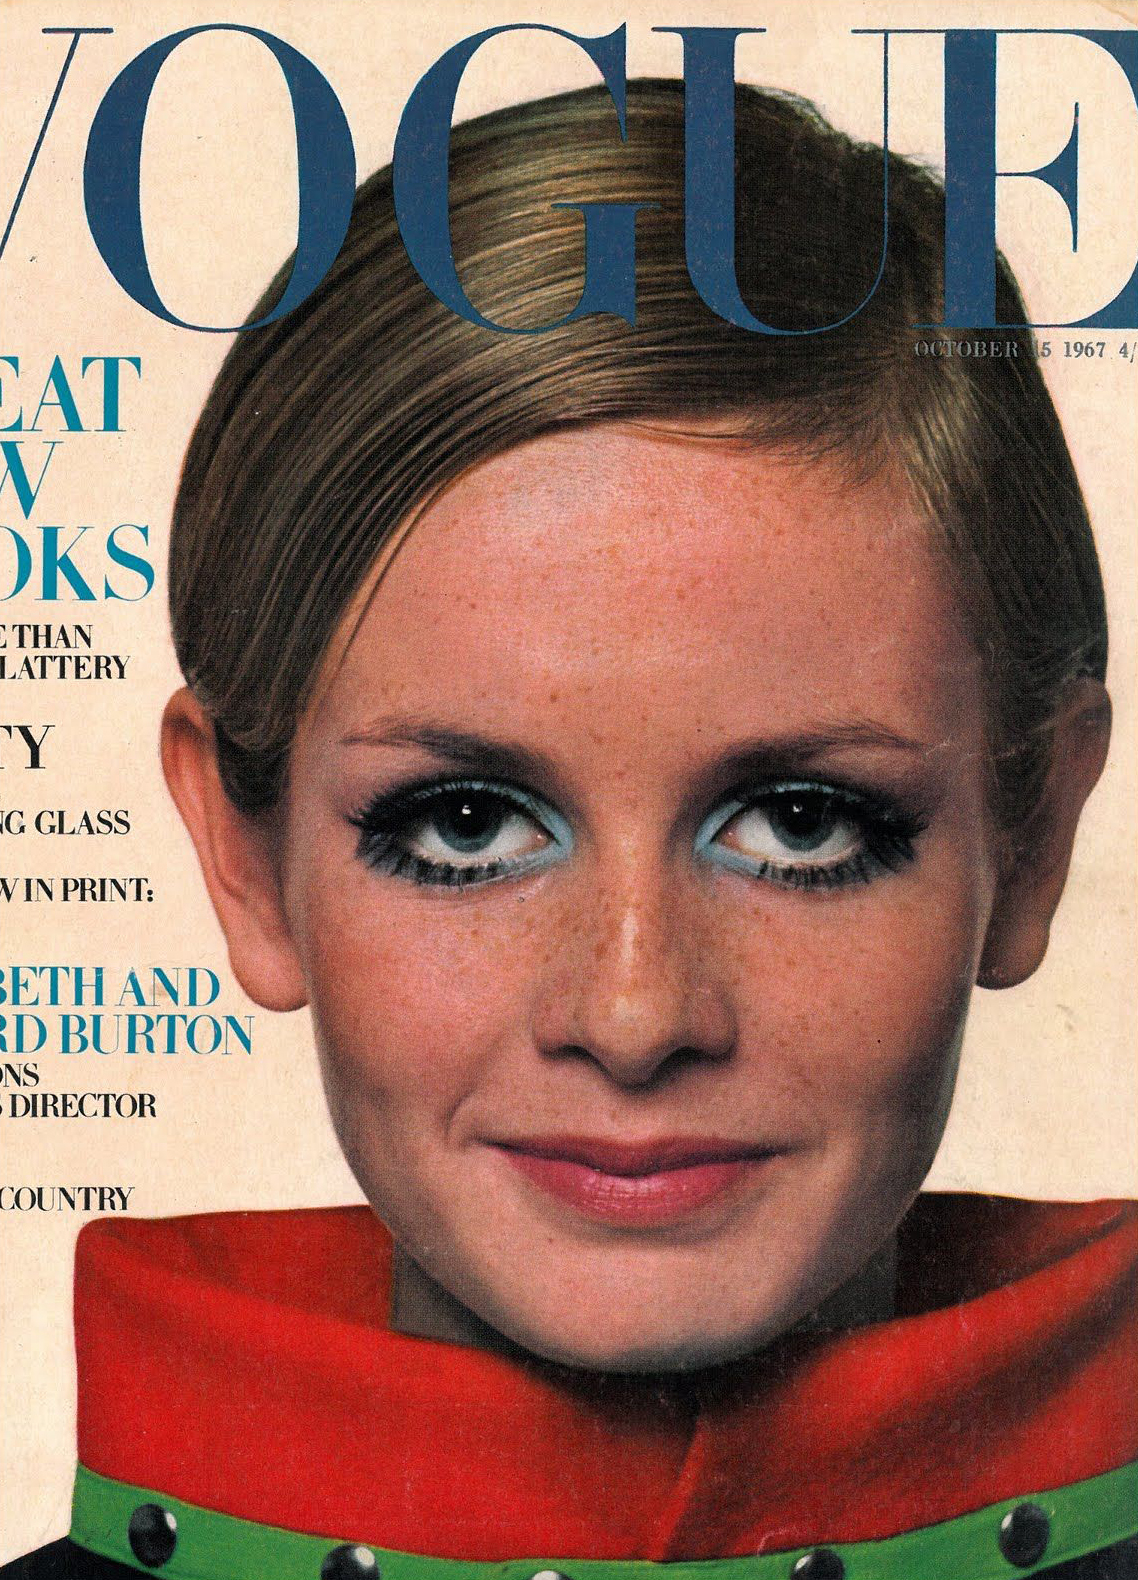 Salt: главное здесь, остальное по вкусу - Твигги на обложке Vogue UK, октябрь 1967